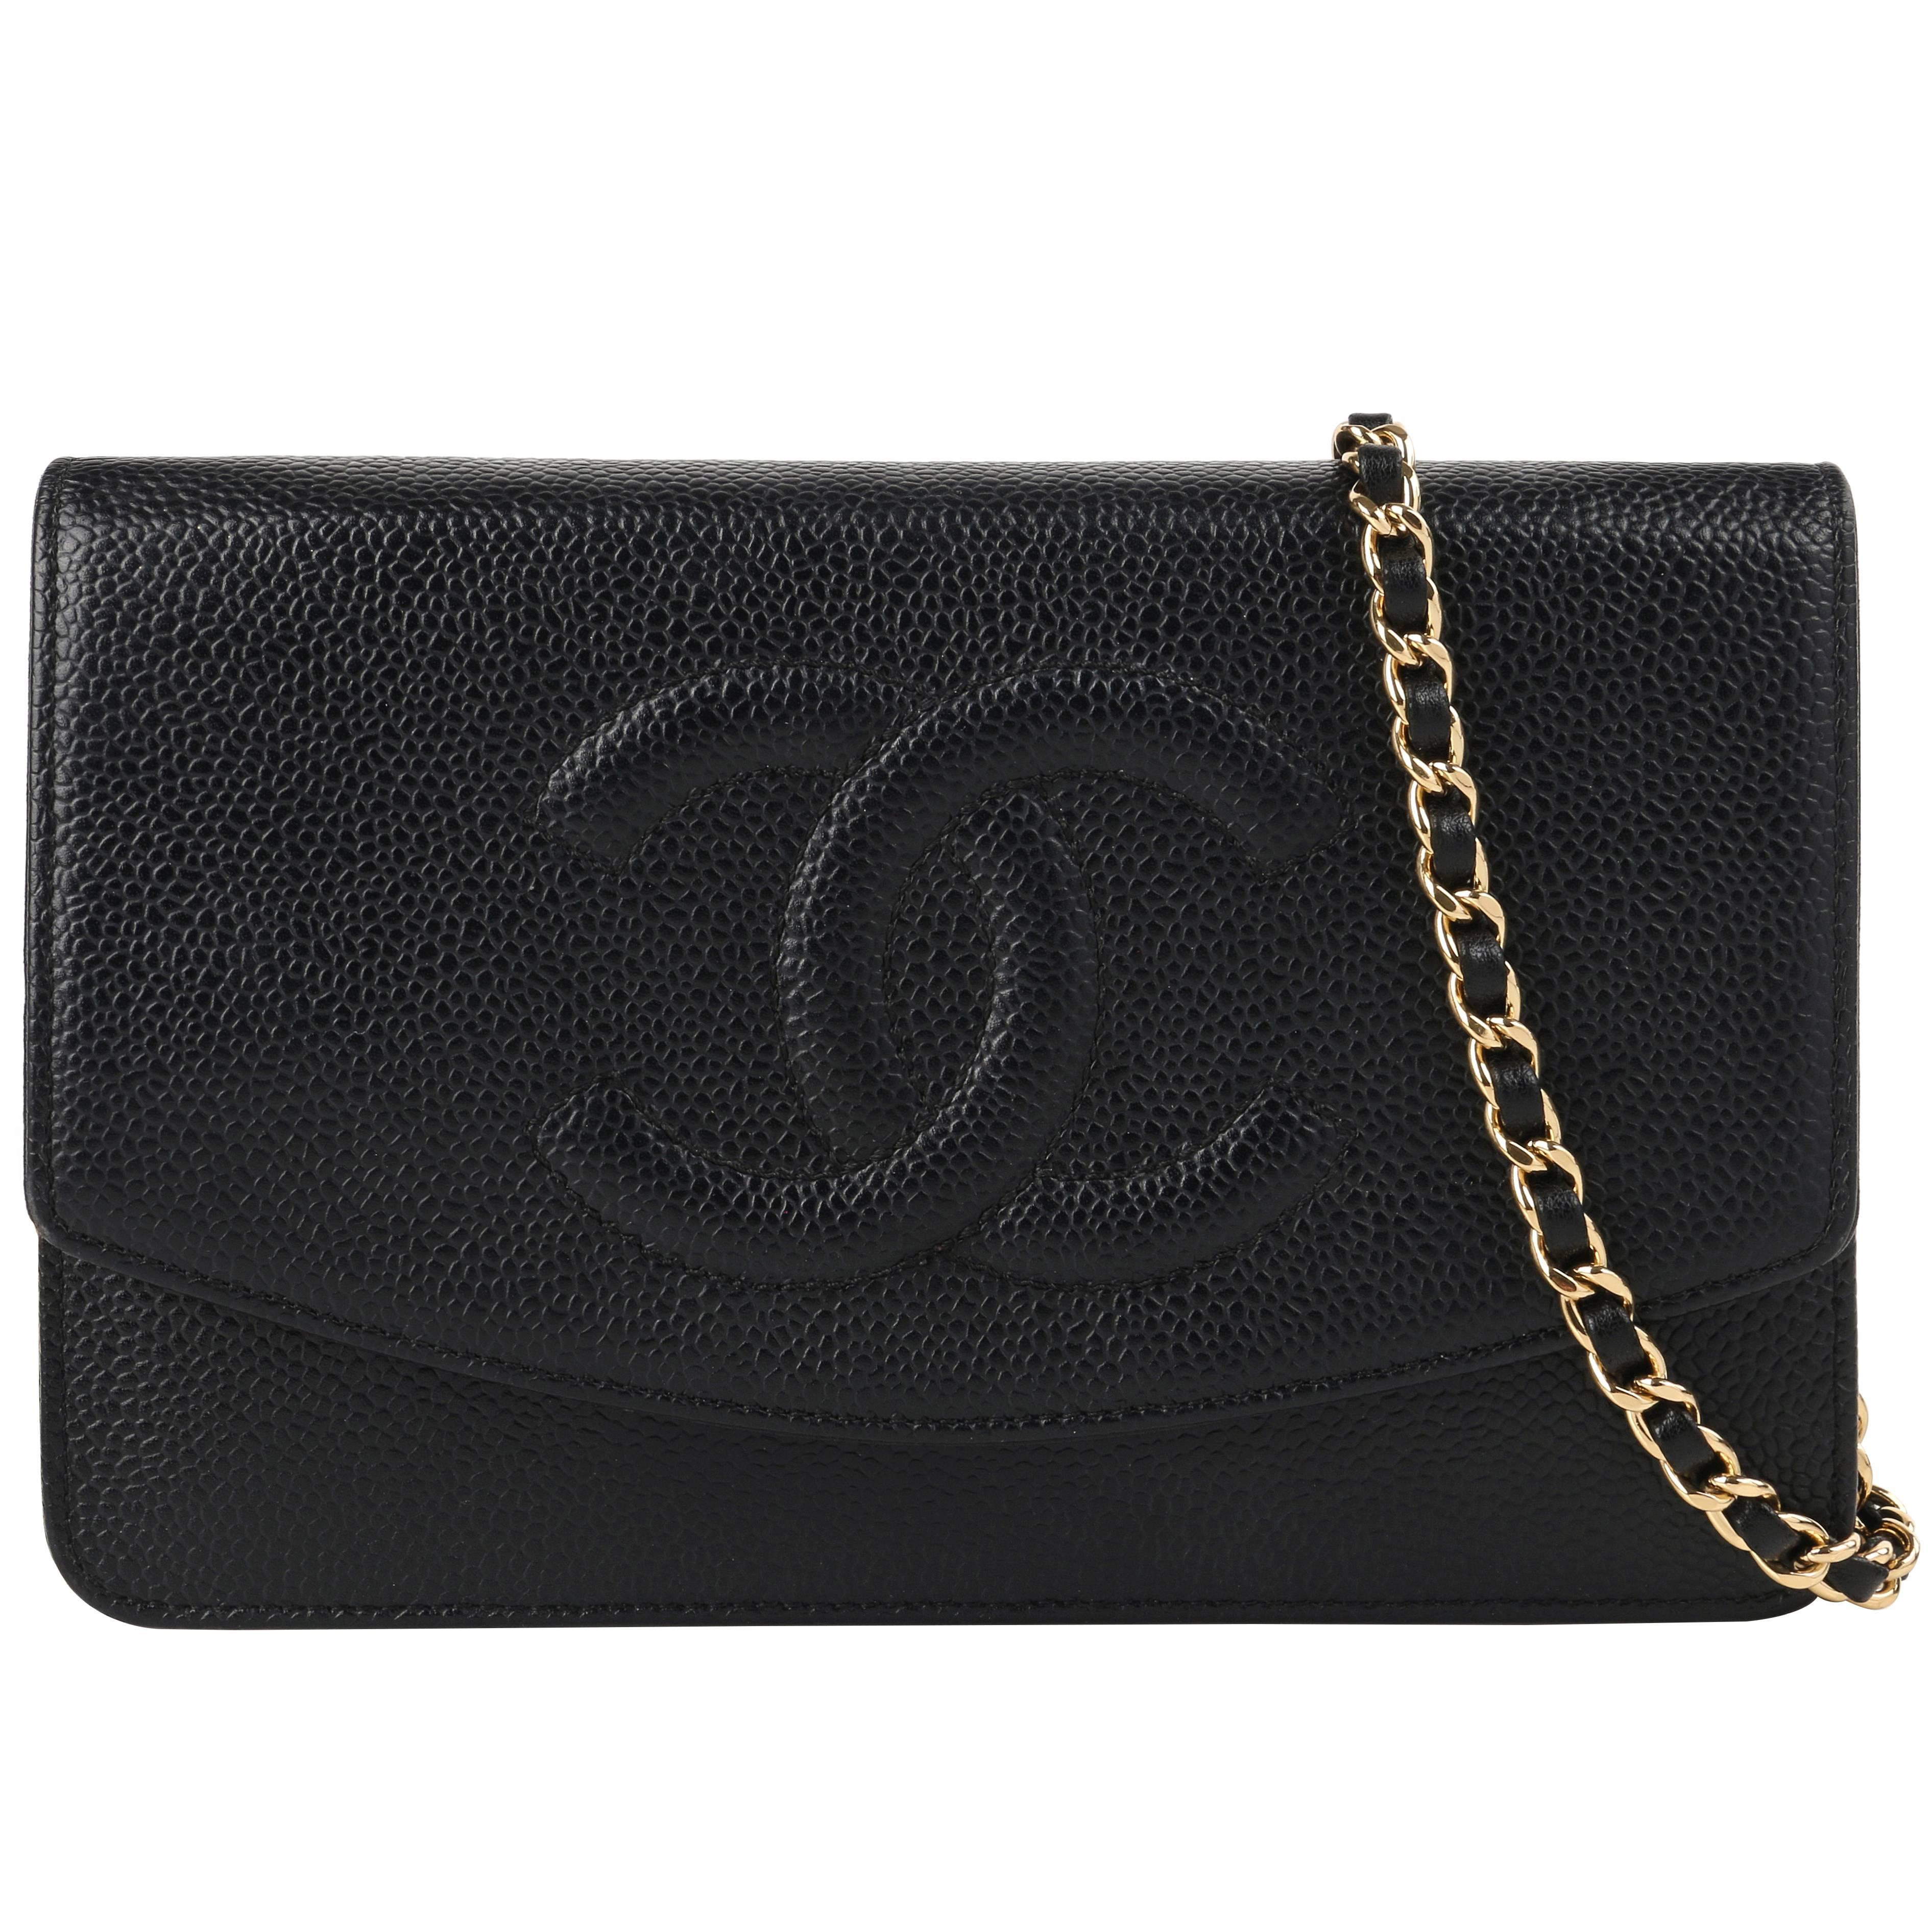 CHANEL c.2007 "Wallet On Chain WOC" Caviar Leather "CC" Crossbody Bag Clutch